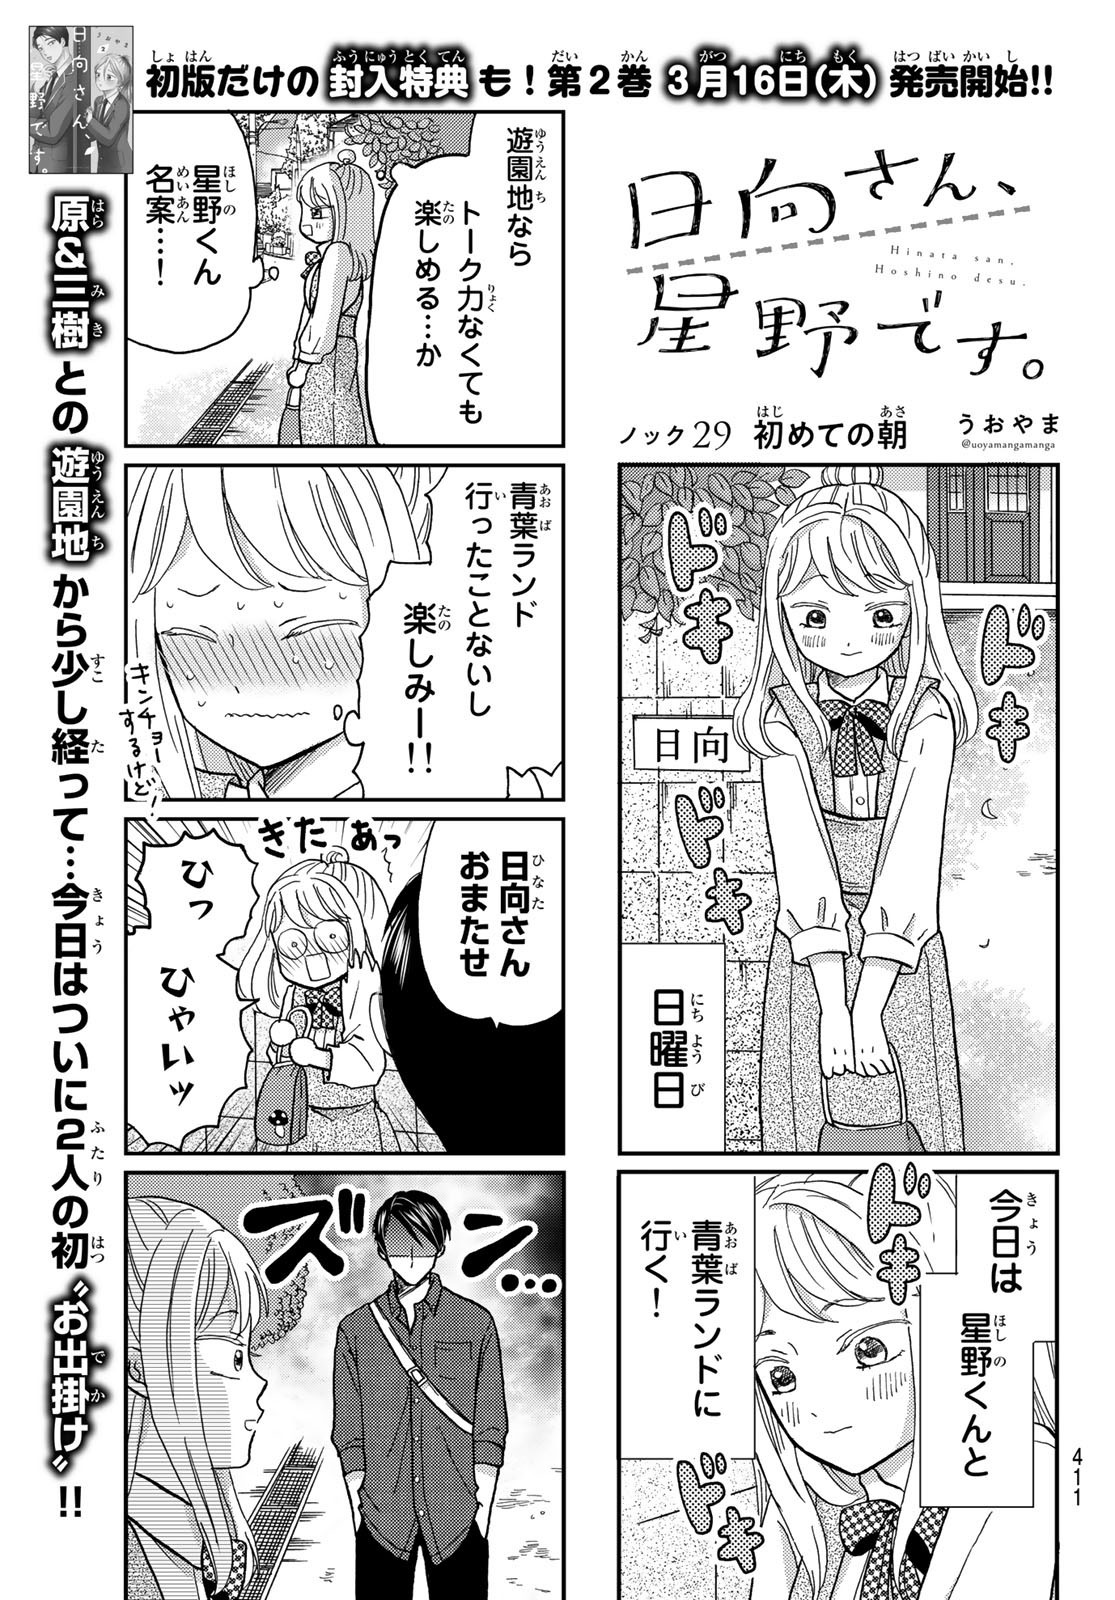 Hinata-san, Hoshino desu. - Chapter 029 - Page 1